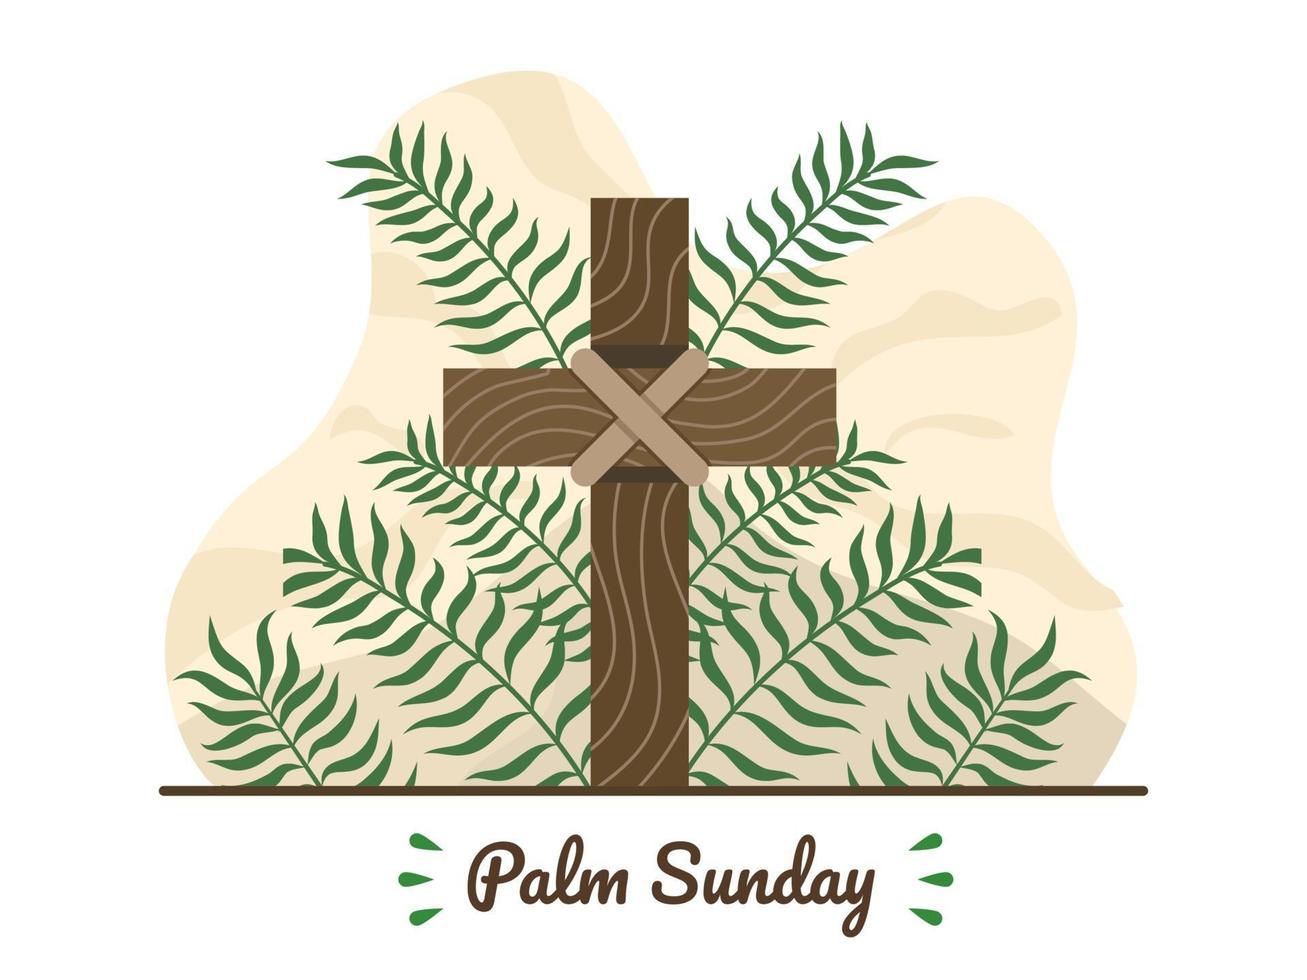 gelukkige palmzondag met christelijk kruis en palmbladeren. christelijke palmzondag religieuze feestdag met palmtakken en houten kruis. geschikt voor wenskaart, uitnodiging, banner, flyer, poster. vector